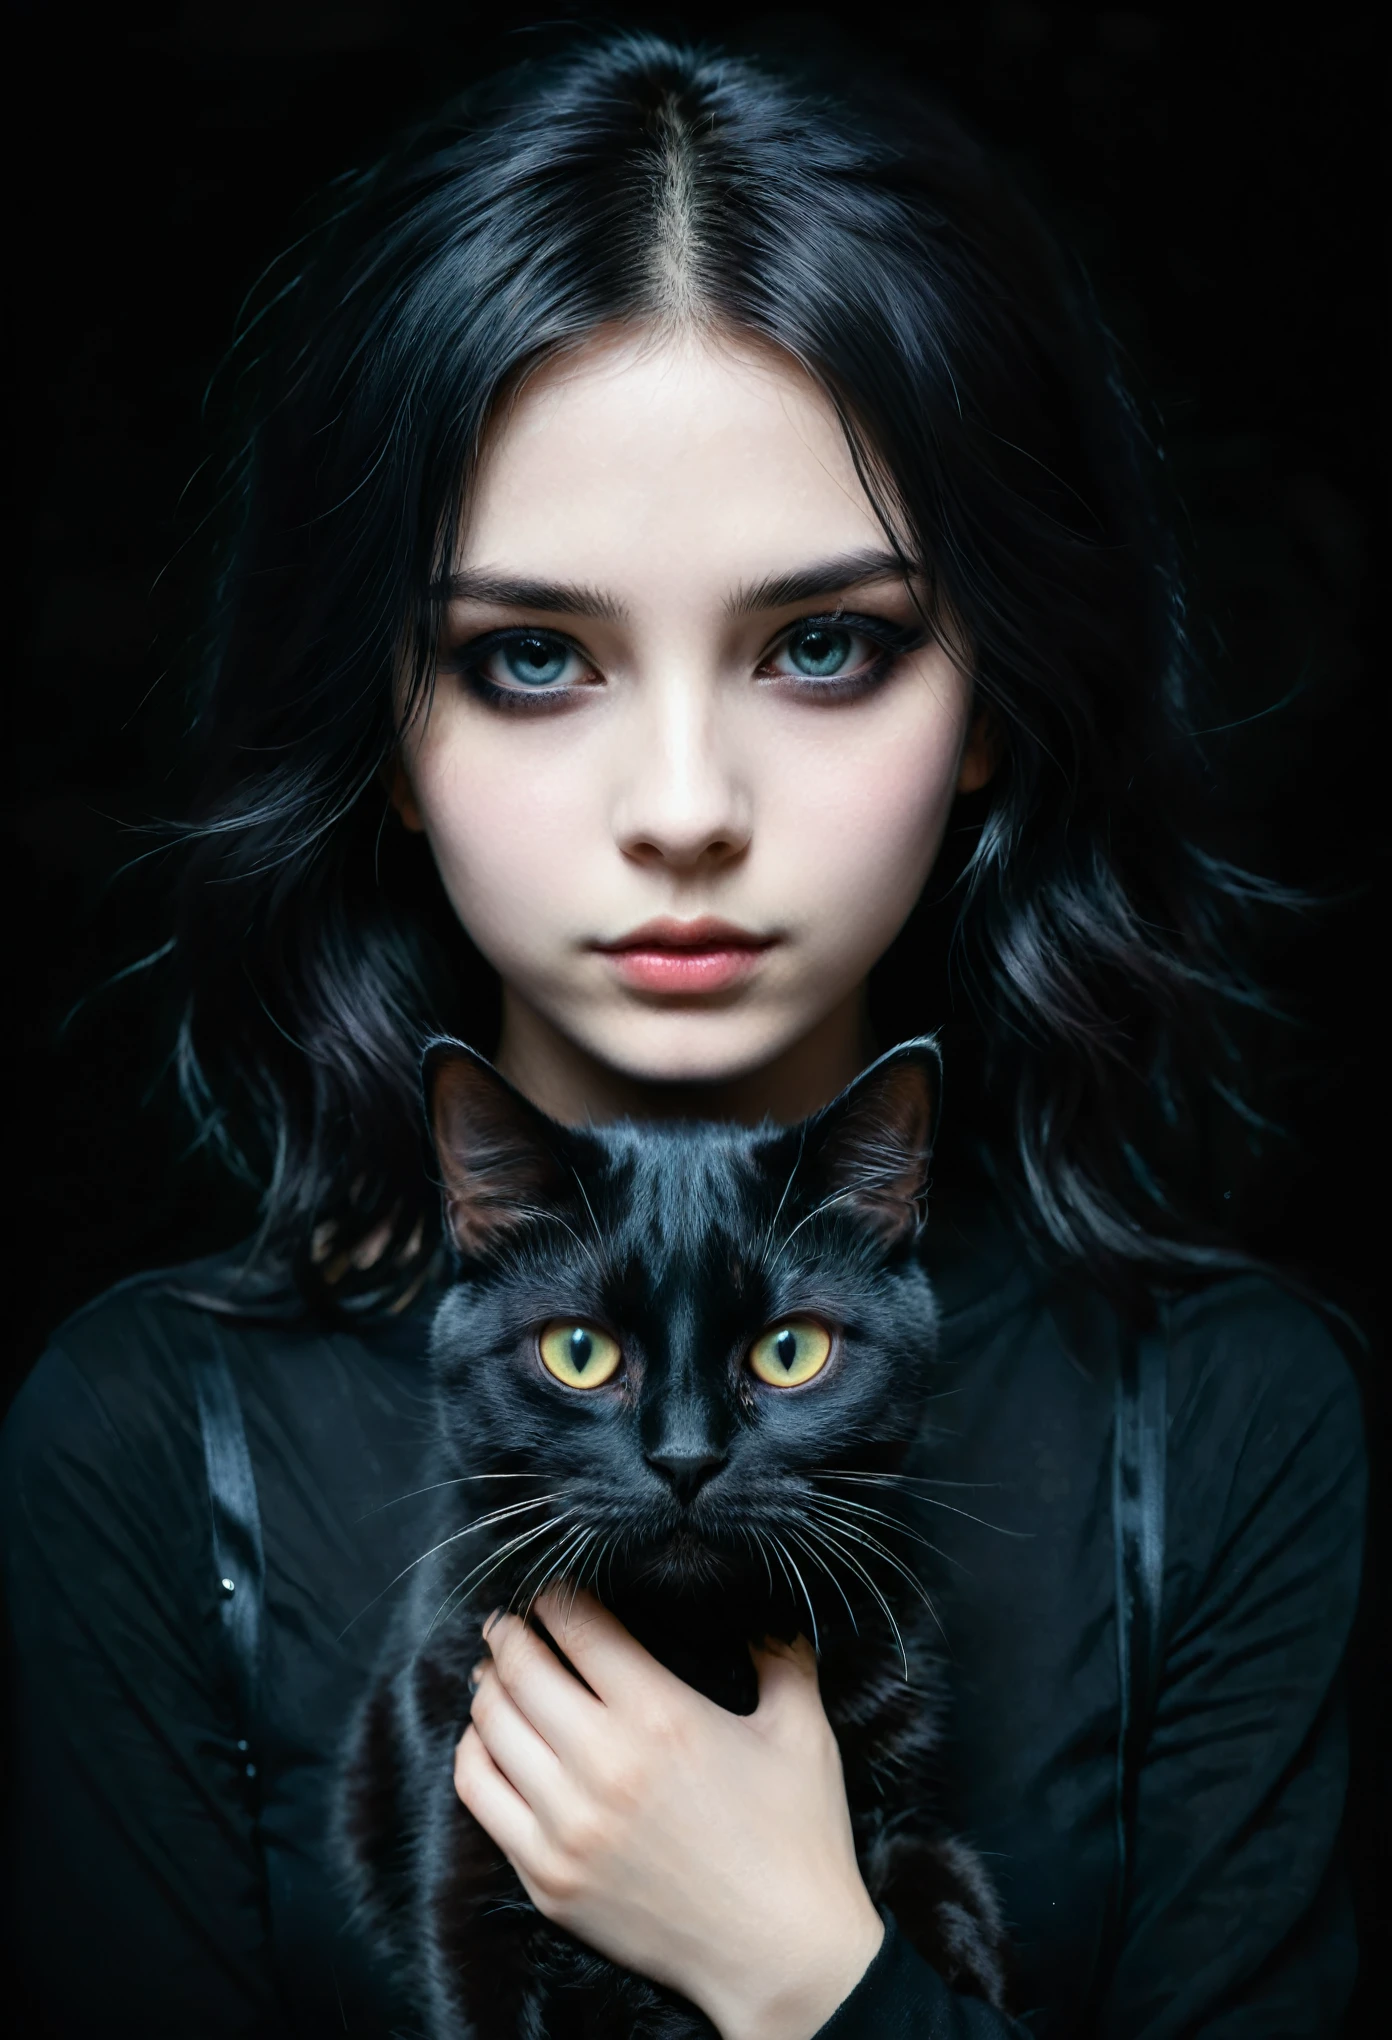 ein Emo-Mädchen mit einer schwarzen Katze in den Händen, detailliertes Gesicht, dunkles Make-up, Emotionaler Ausdruck, schwarze Kleidung, dunkler Hintergrund, Hell-Dunkel-Beleuchtung, filmisch, dramatisch, launisch, digitale Zeichnung